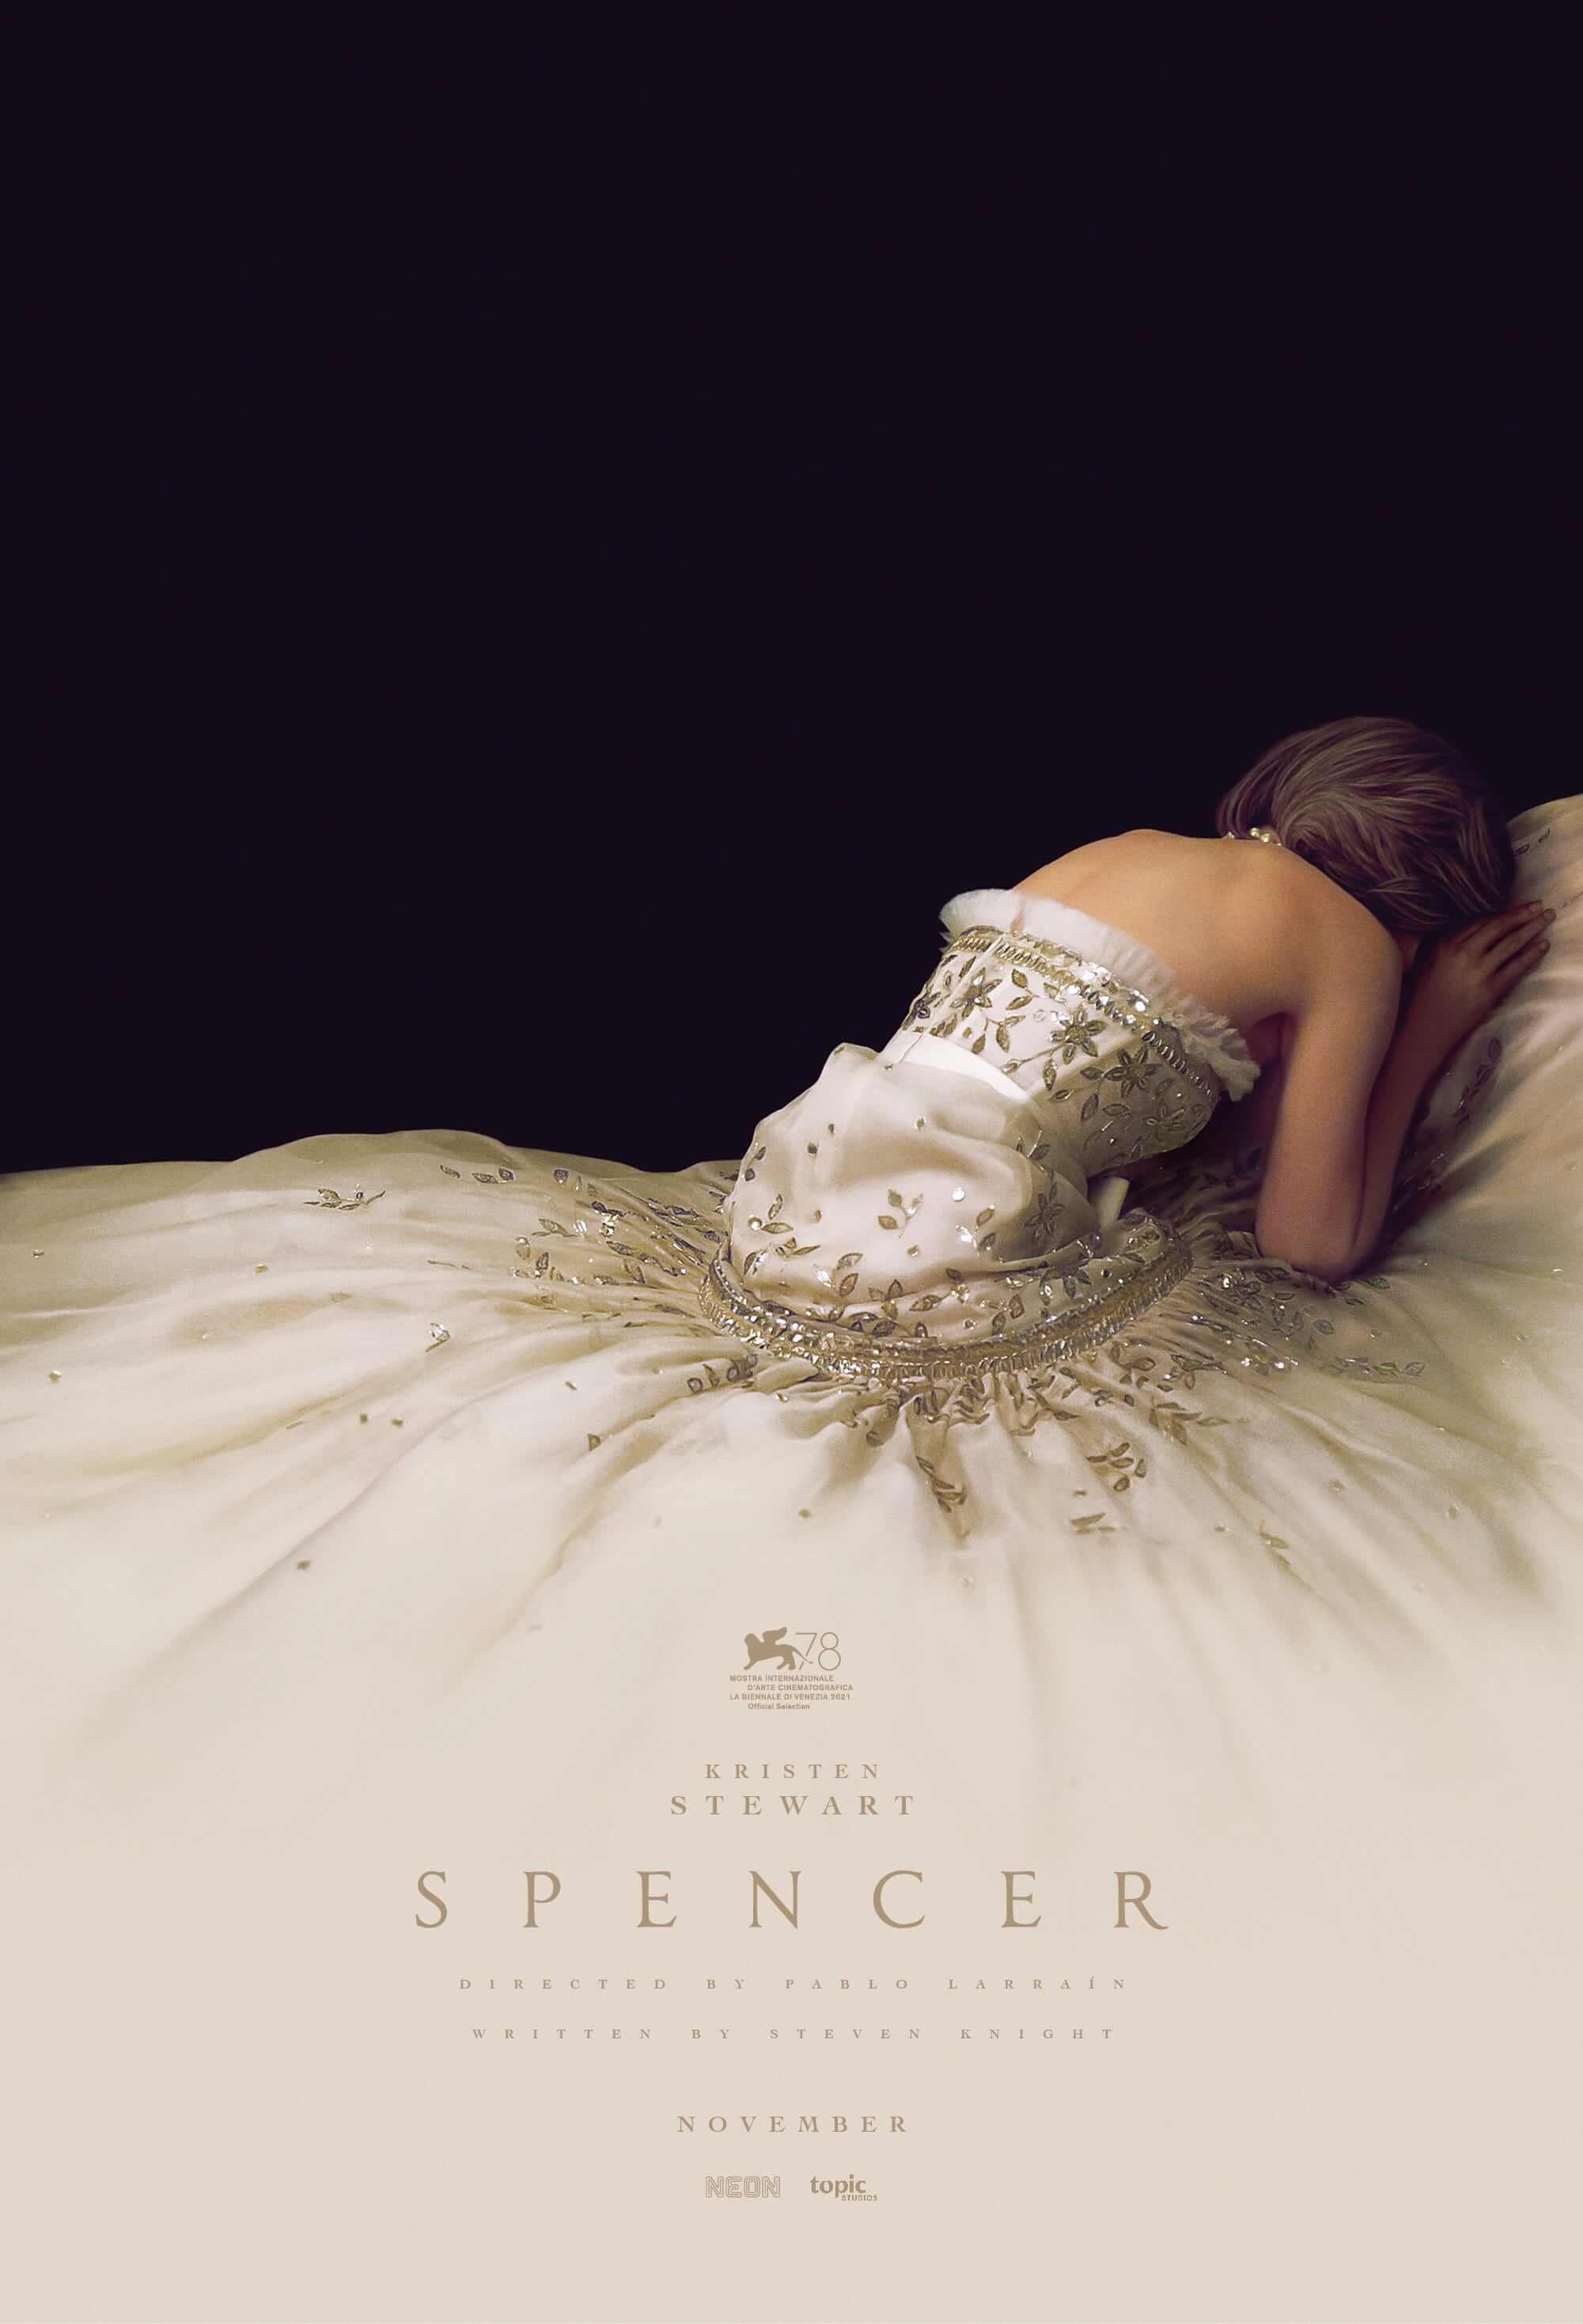 Kristen Stewart channels Princess Diana’s turmoil in ‘Spencer’ poster